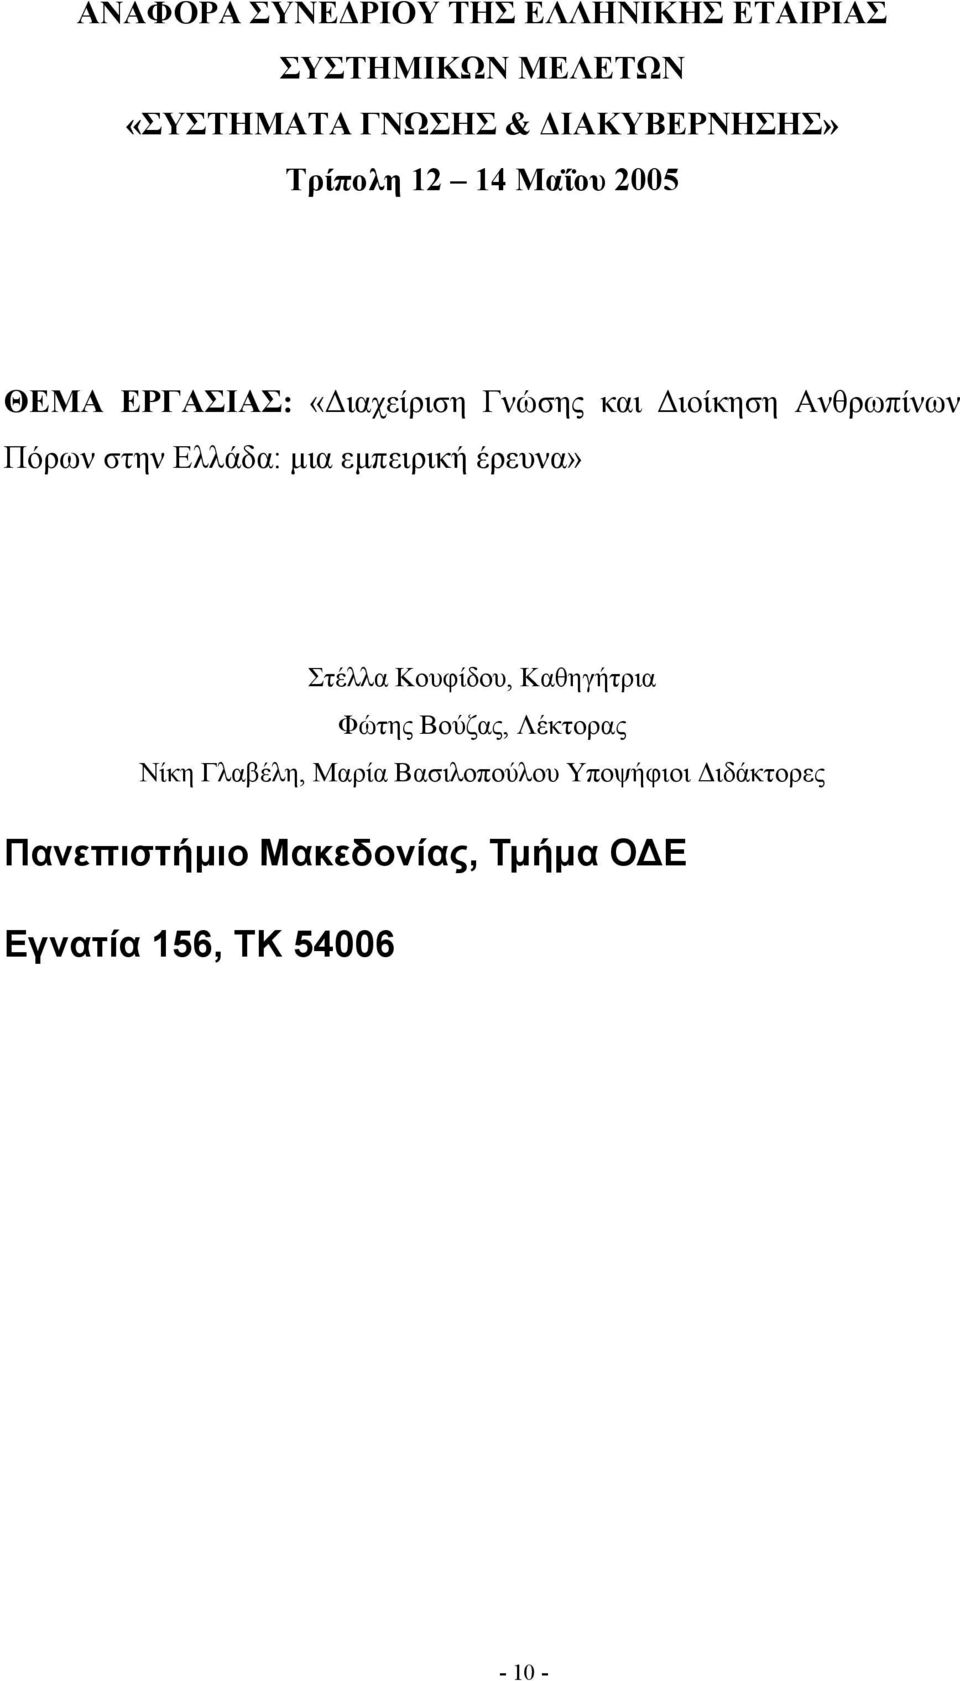 Ελλάδα: µια εµπειρική έρευνα» Στέλλα Κουφίδου, Καθηγήτρια Φώτης Βούζας, Λέκτορας Νίκη Γλαβέλη,